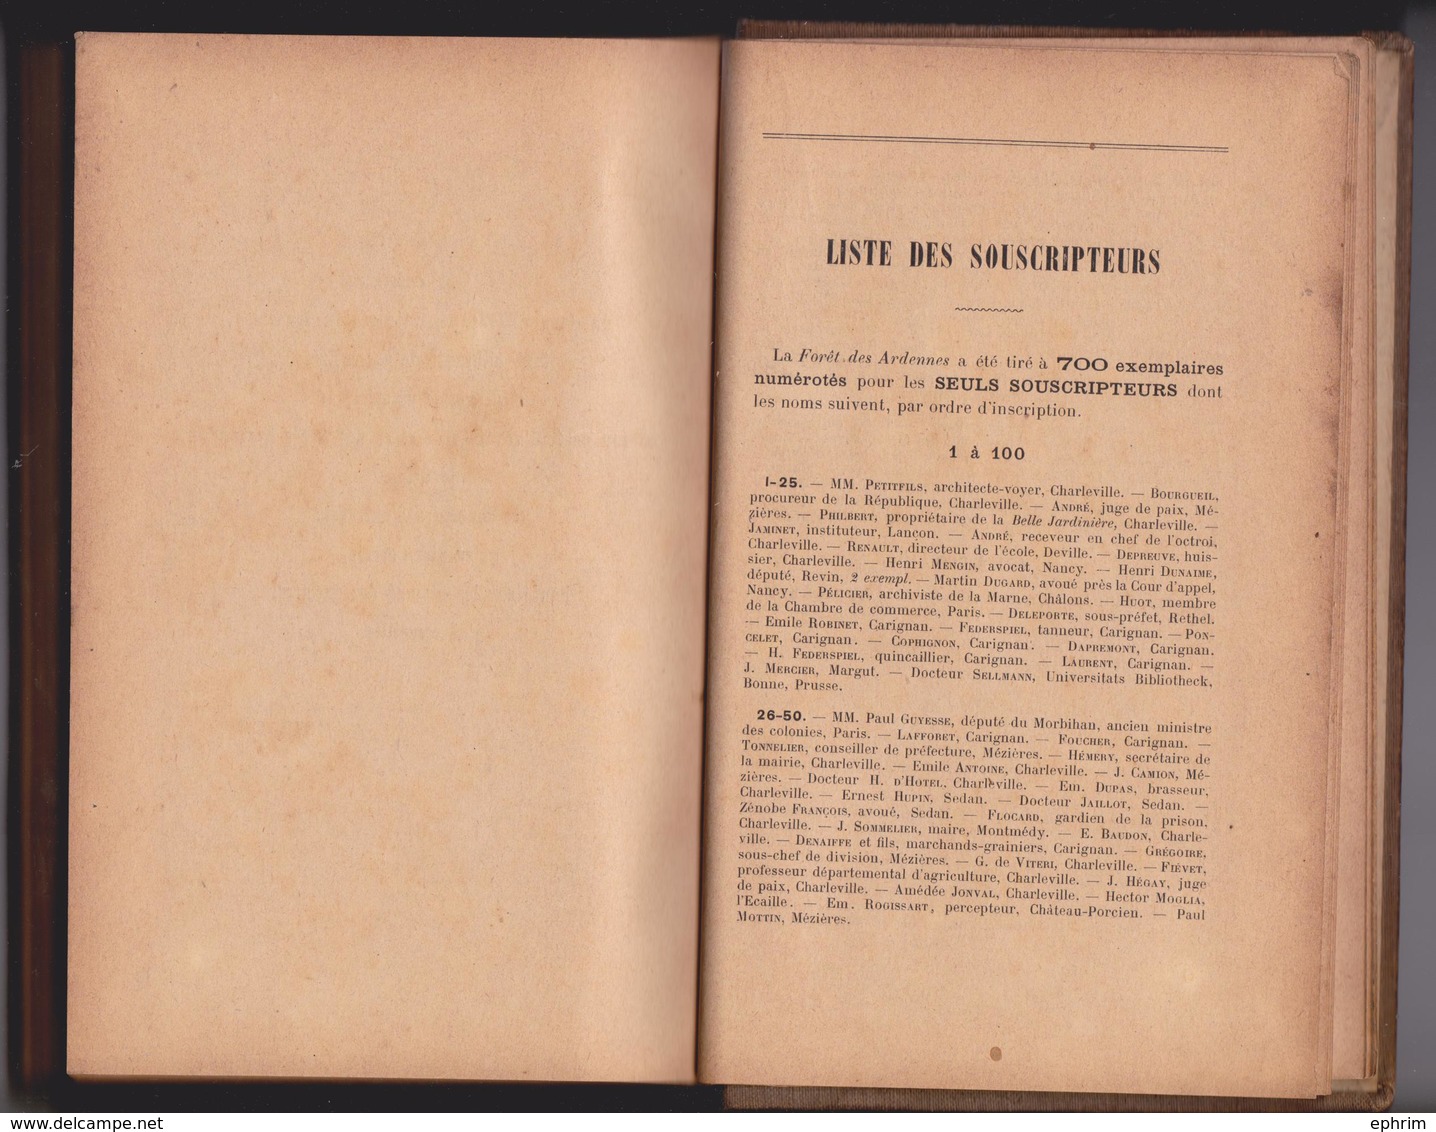 La Forêt Des Ardennes Par Albert Meyrac 1896 Edition Limitée Numérotée 449 Souscripteur Jadot D'Alland'huy - Sorcellerie - Champagne - Ardenne